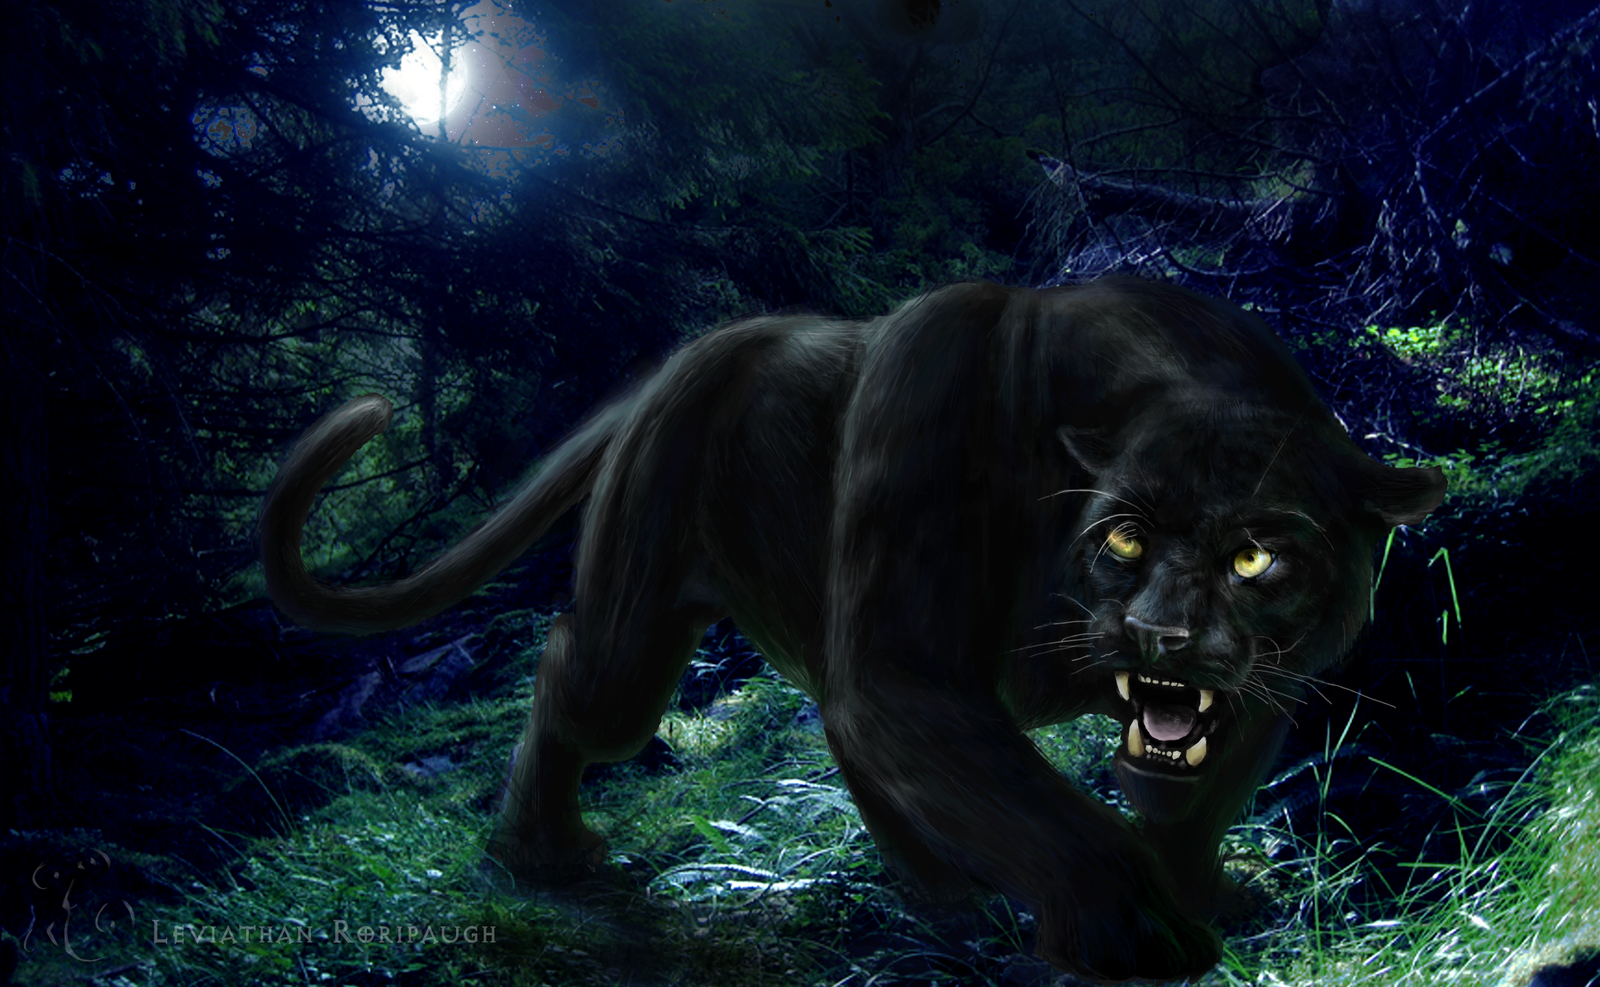 Free download Black Panther HD Wallpapers black panther wild